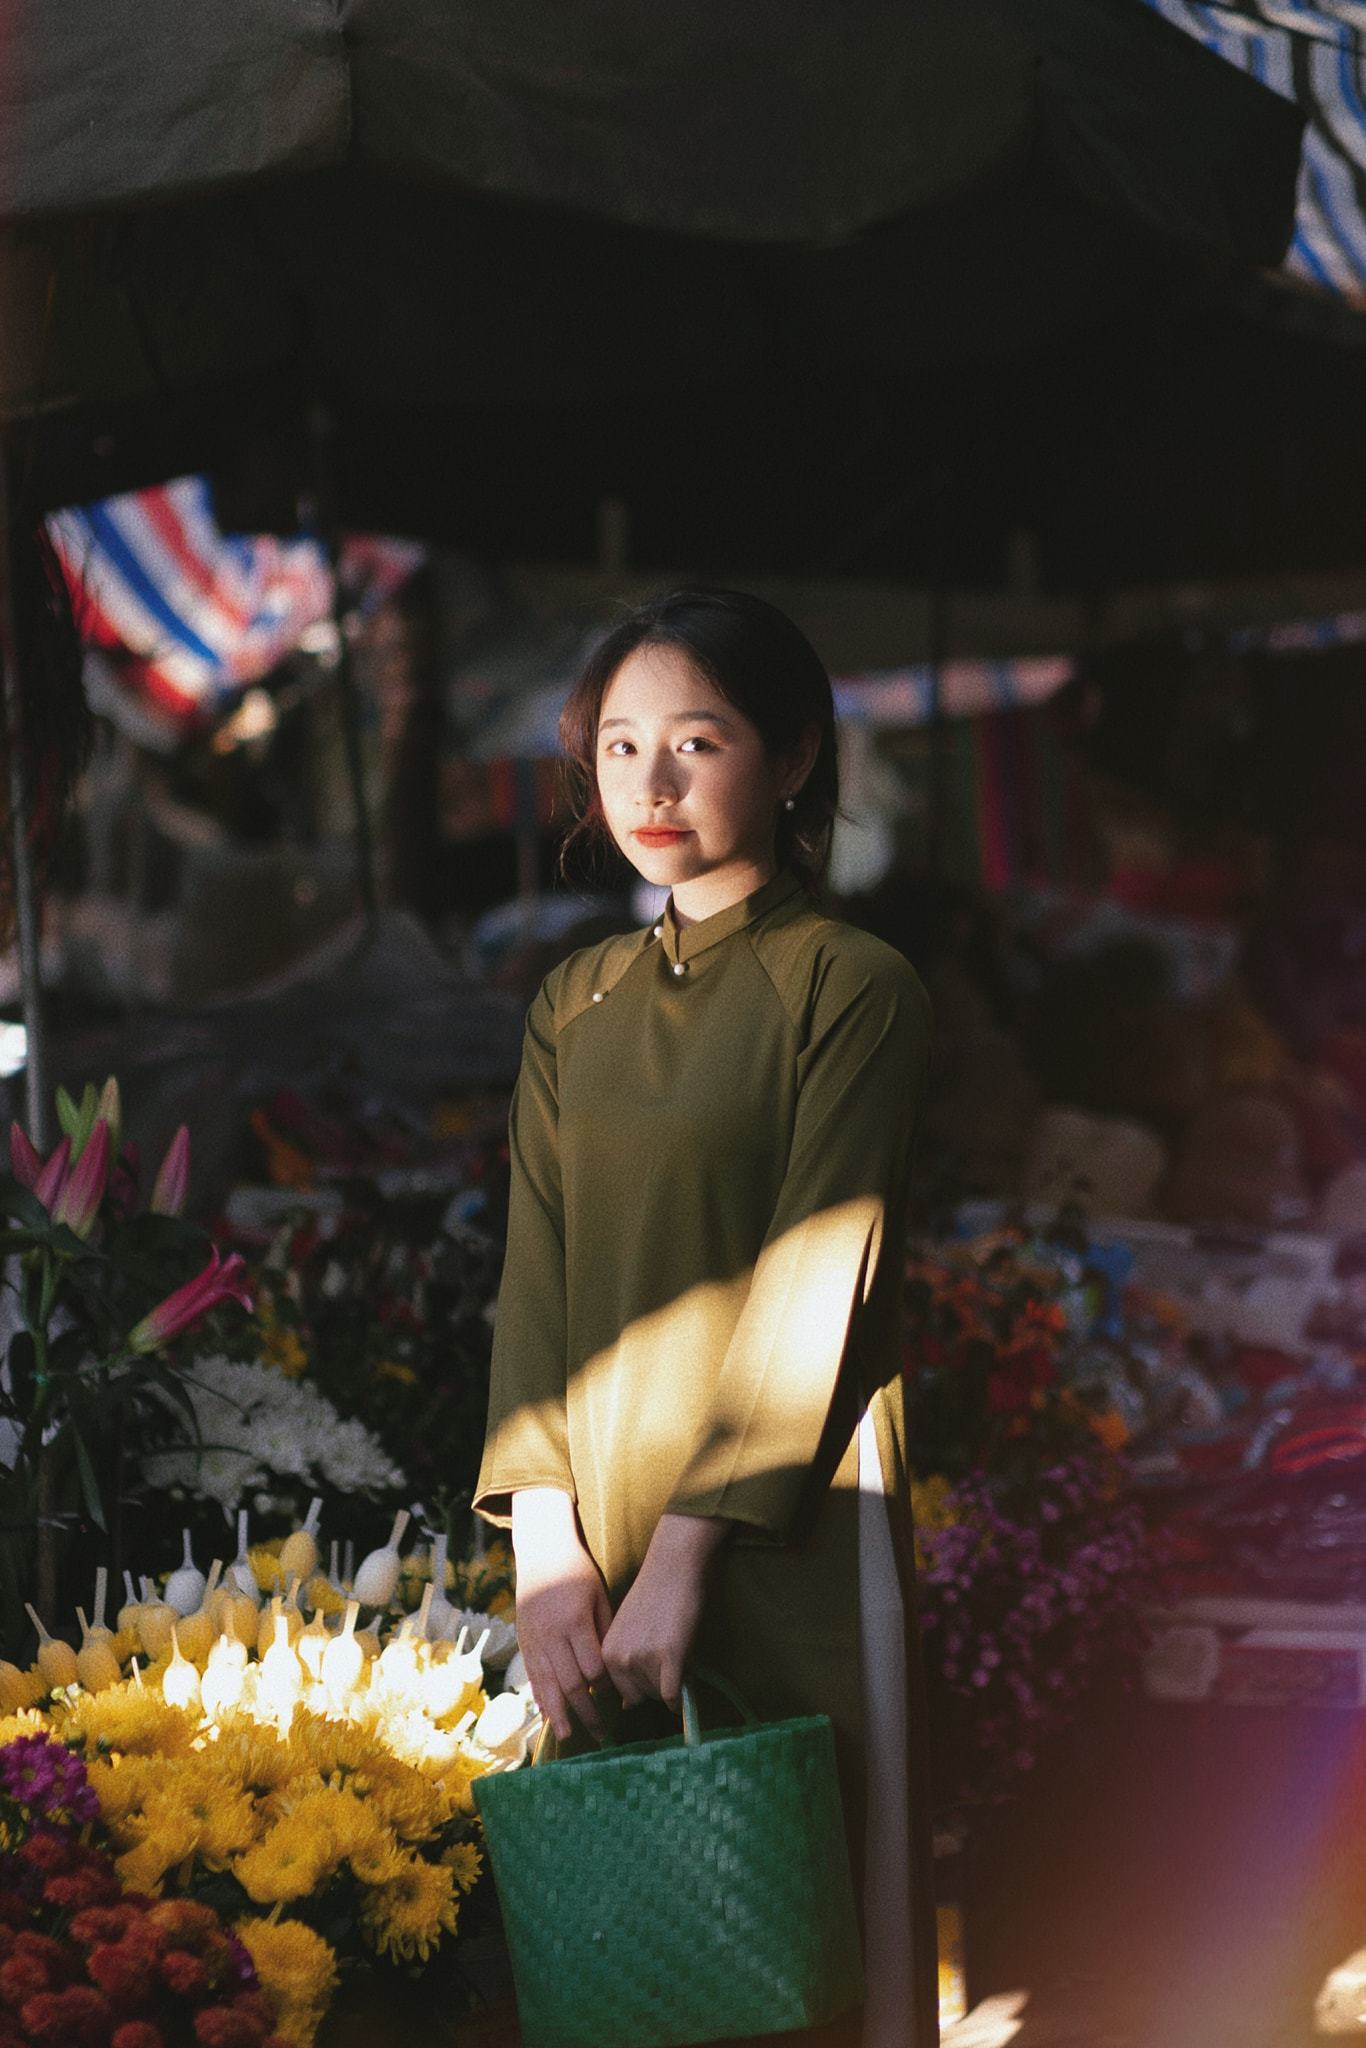 Mỗi độ Tết về, chợ Tết truyền thống lại hiện lên như một mảng sắc thắm hữu tình, phản ánh đầy đủ nét đẹp và những giá trị văn hóa truyền thống của người Việt Nam. Tại đó, bạn sẽ có cơ hội thực sự chiêm ngưỡng và trải nghiệm một mùa Tết thật trọn vẹn.